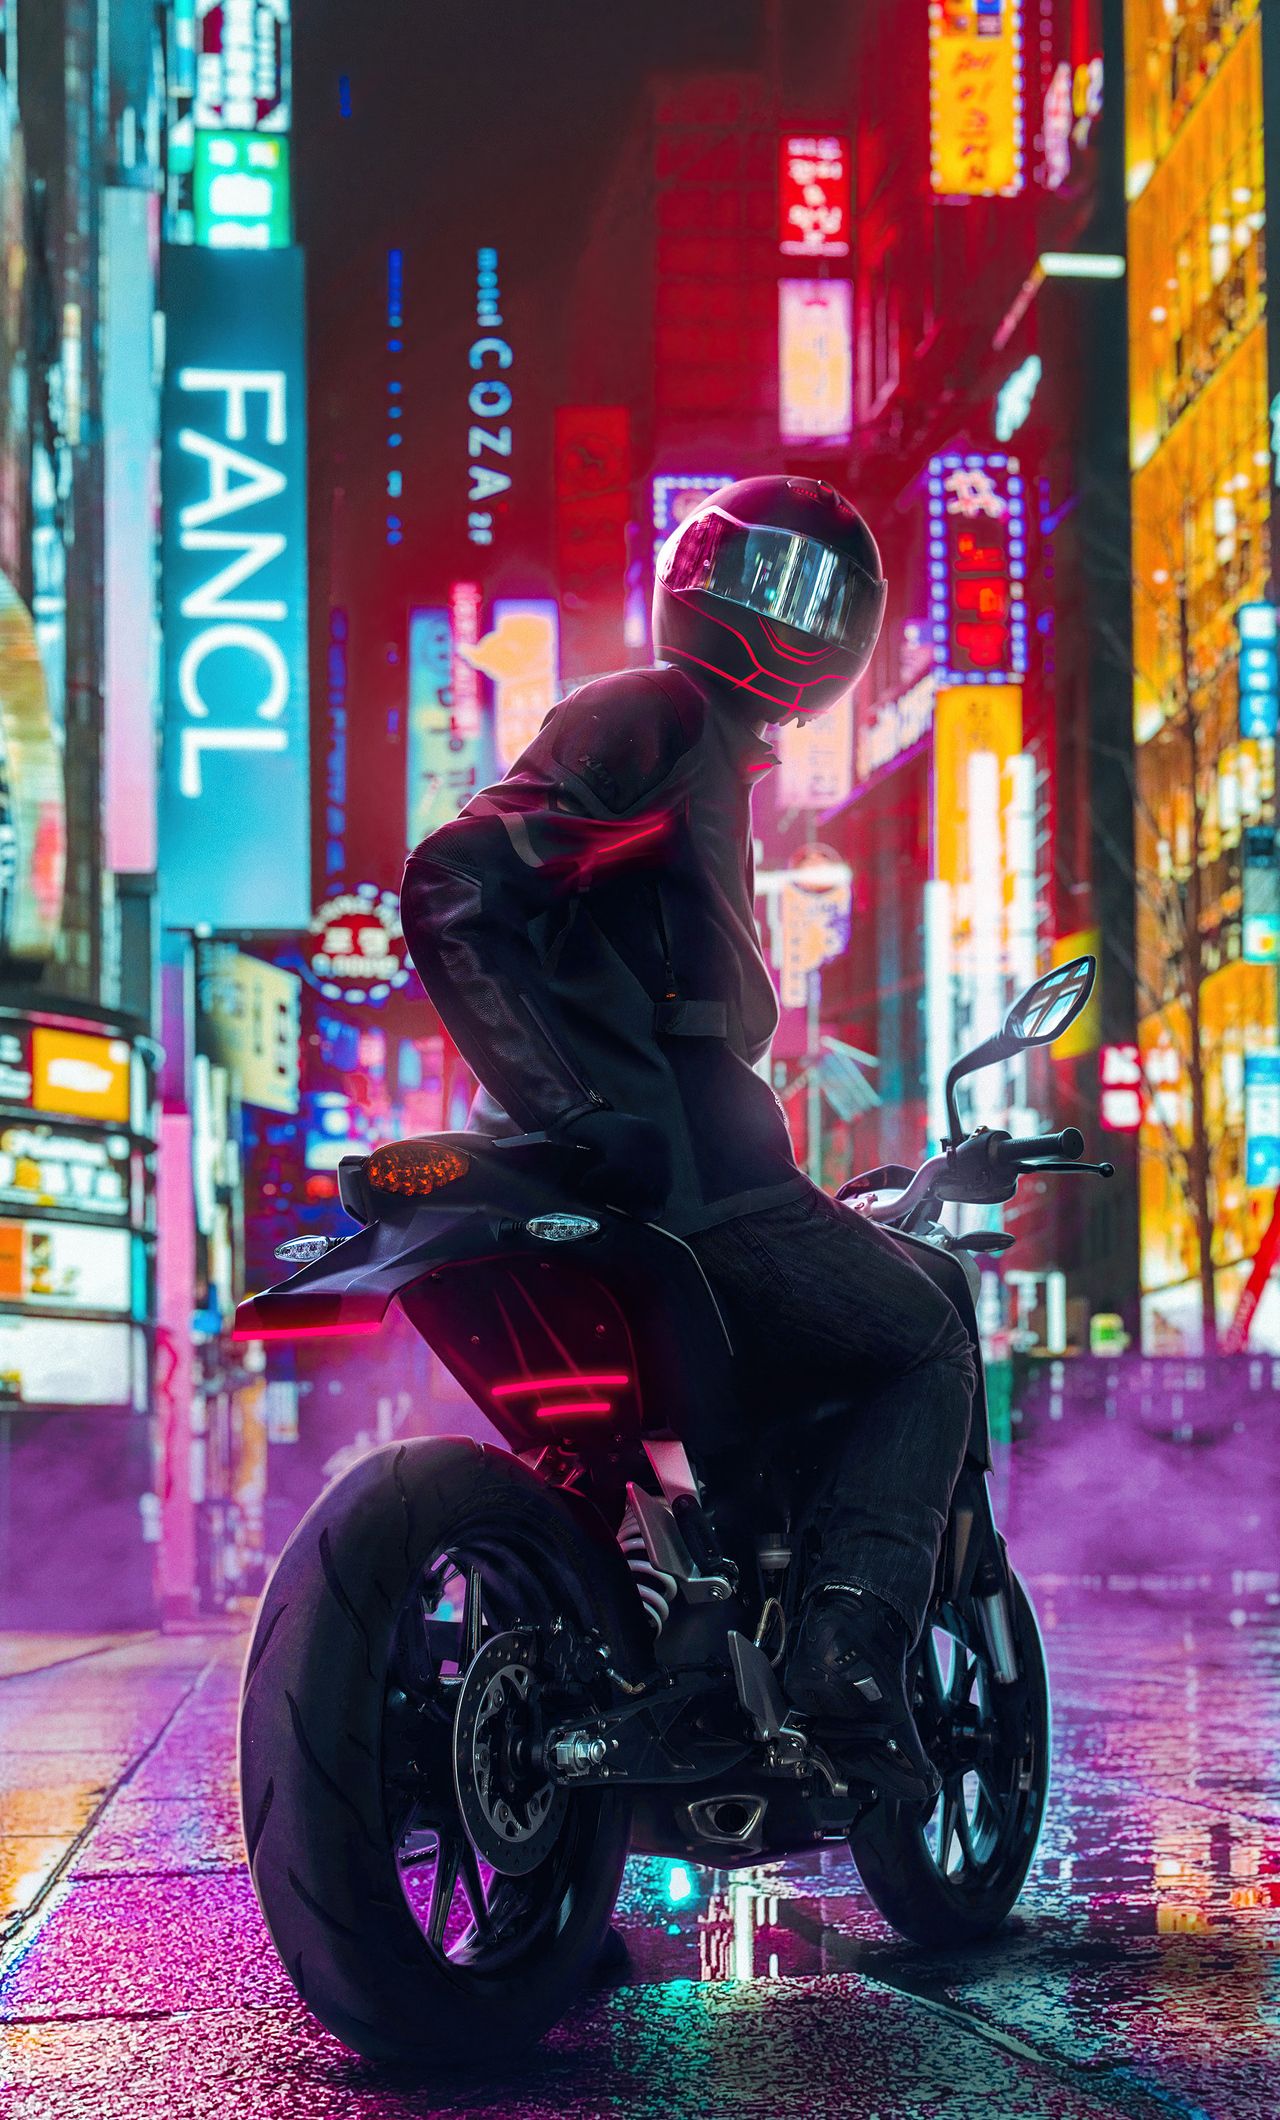 Cyberpunk motorcycle art фото 69